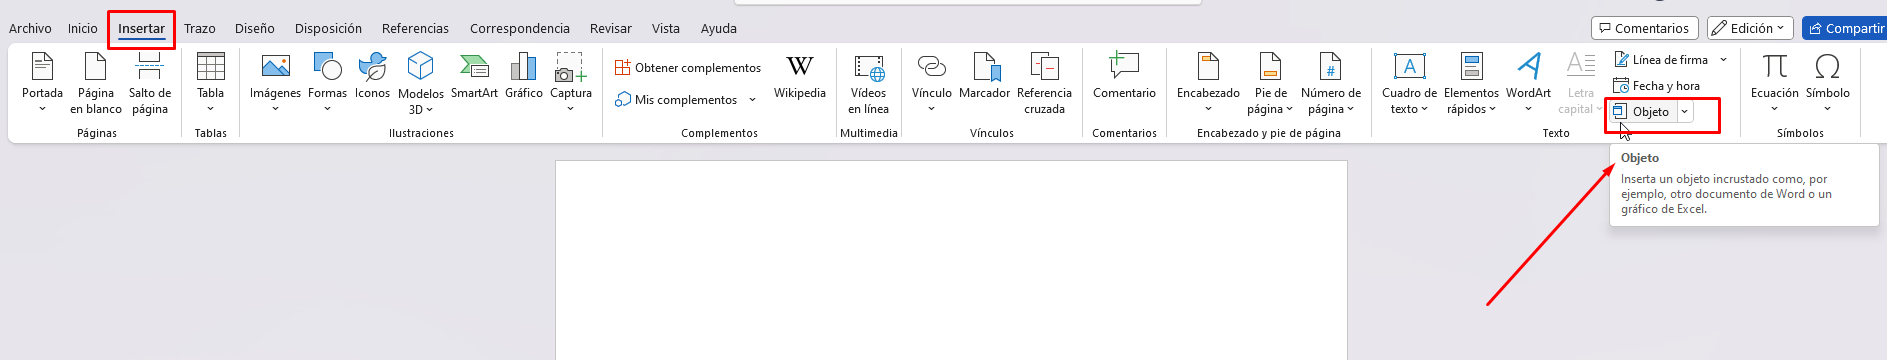 Cómo abrir un documento de Word en Excel – Paso a paso